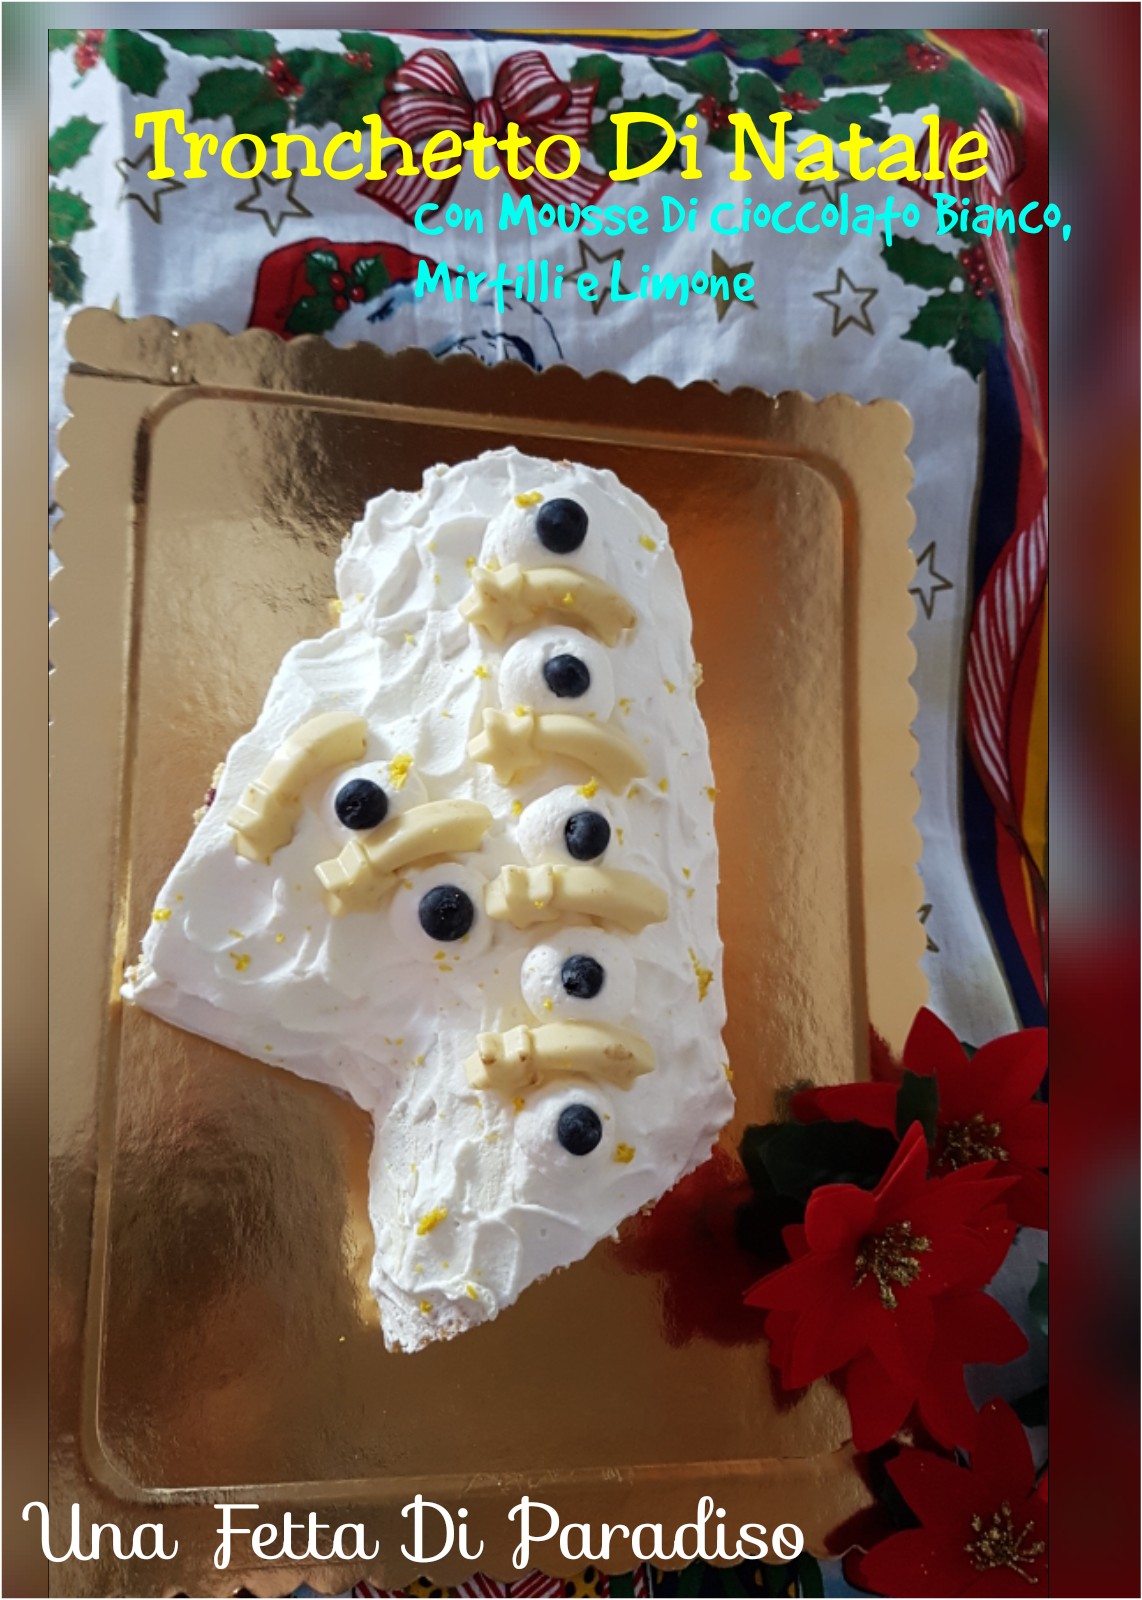 Tronchetto Bianco Di Natale.Una Fetta Di Paradiso Tronchetto Di Natale Con Mousse Di Cioccolato Bianco Mirtilli E Limone